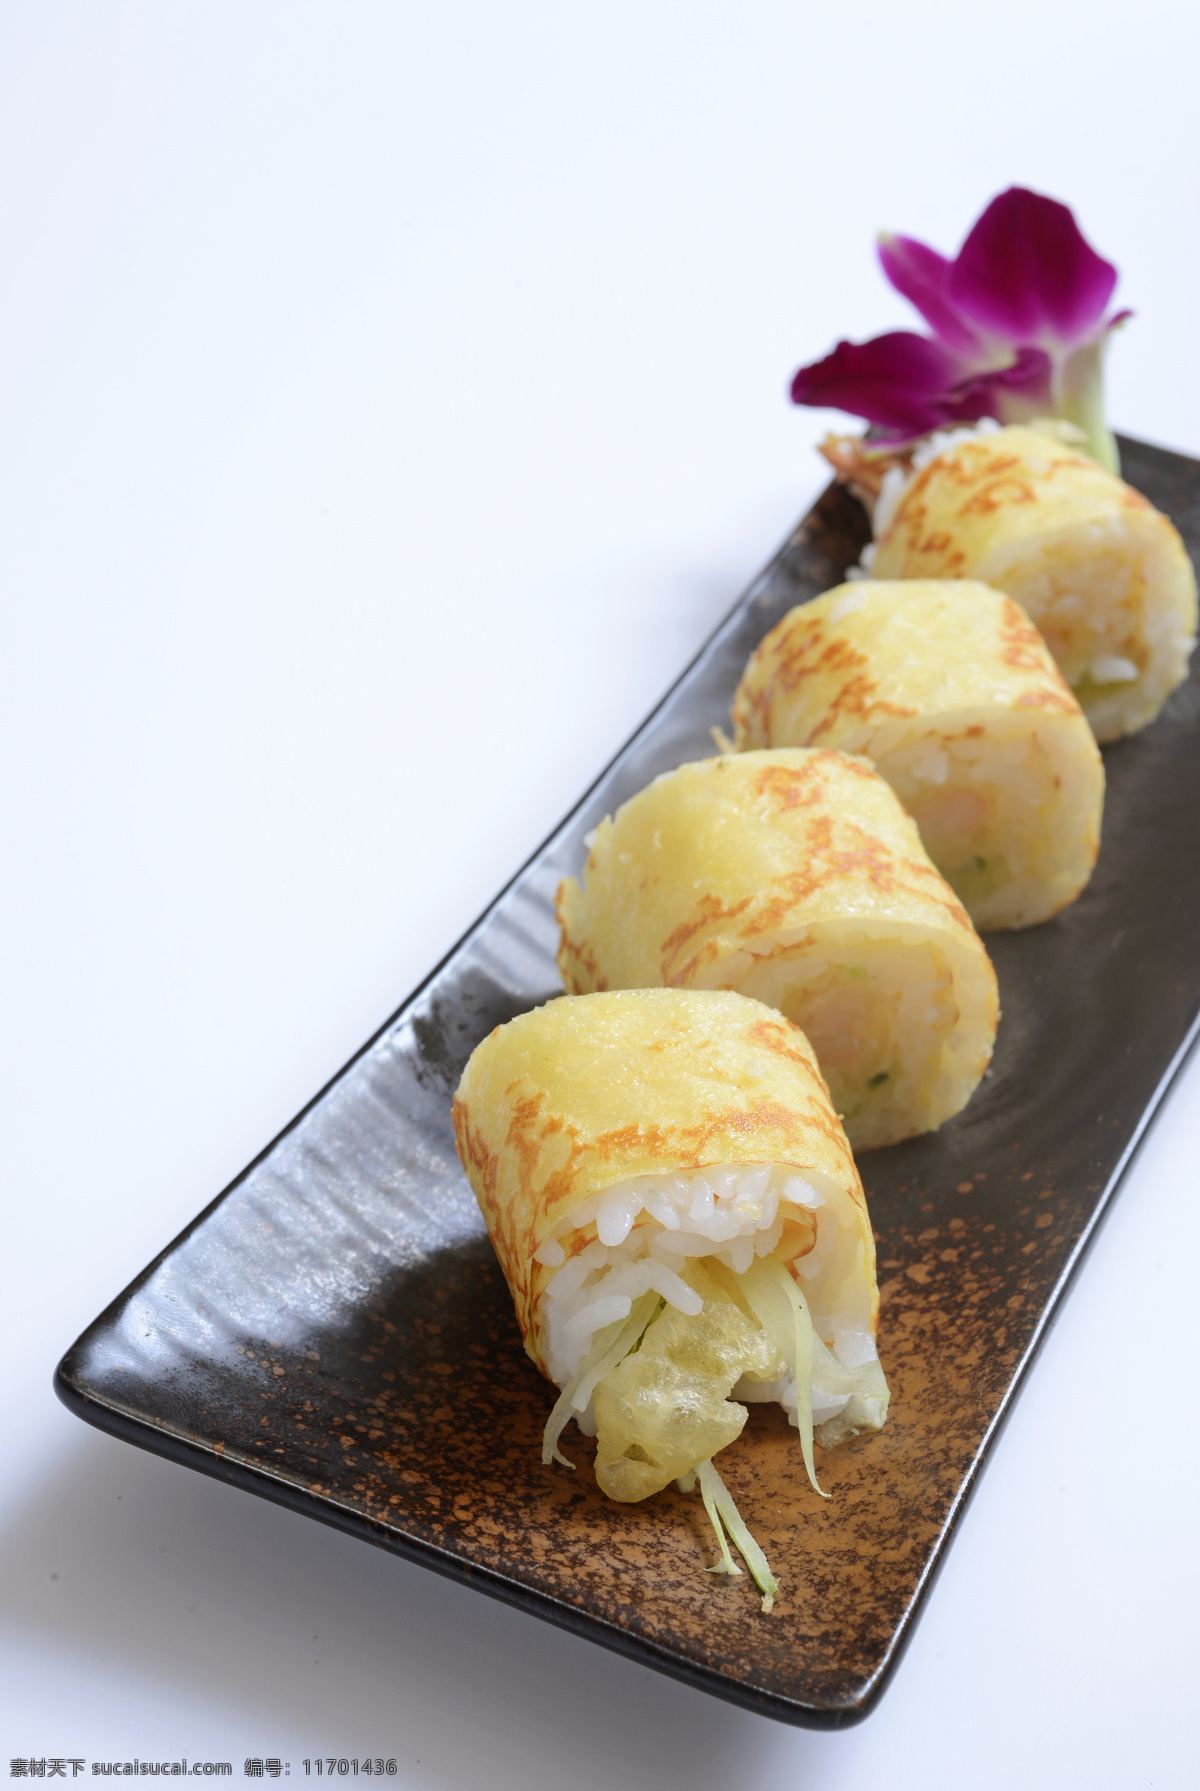 皮蛋虾卷 日式风味 寿司卷 创意卷物 鸡蛋卷 餐饮美食